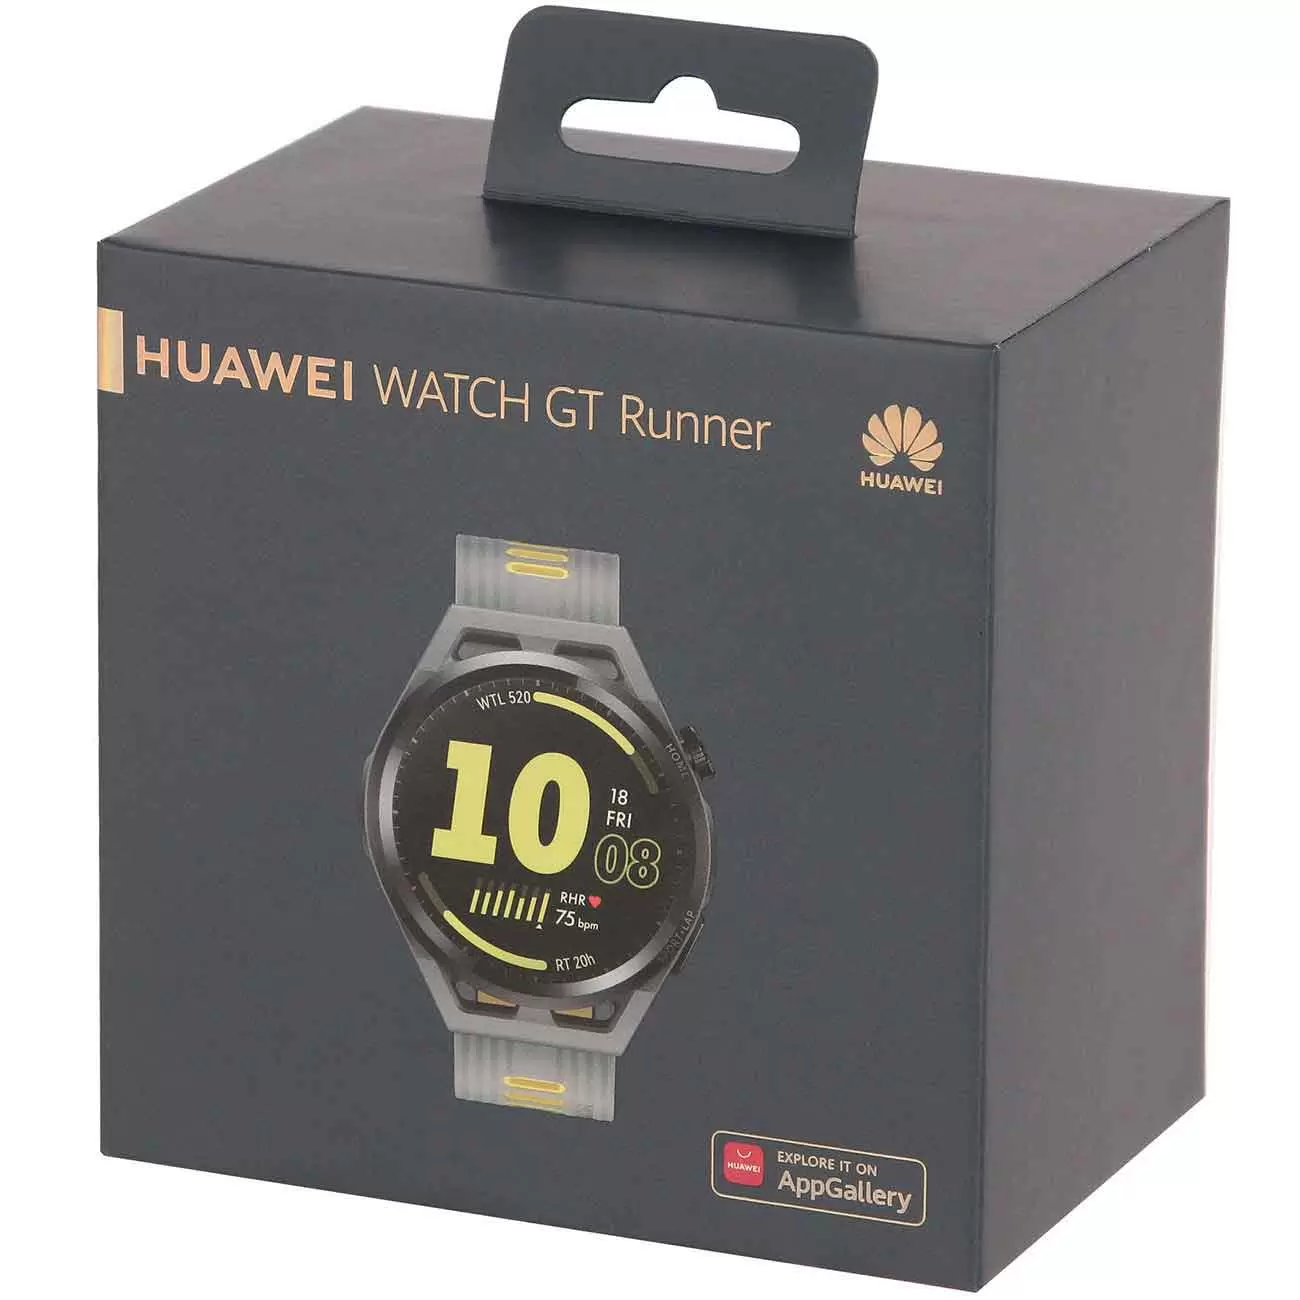 Huawei gt runner купить. Huawei gt Runner Run-b19 Grey dp Fiber. Huawei gt Runner Run-b19. Huawei watch gt Runner. Huawei Runner серый.